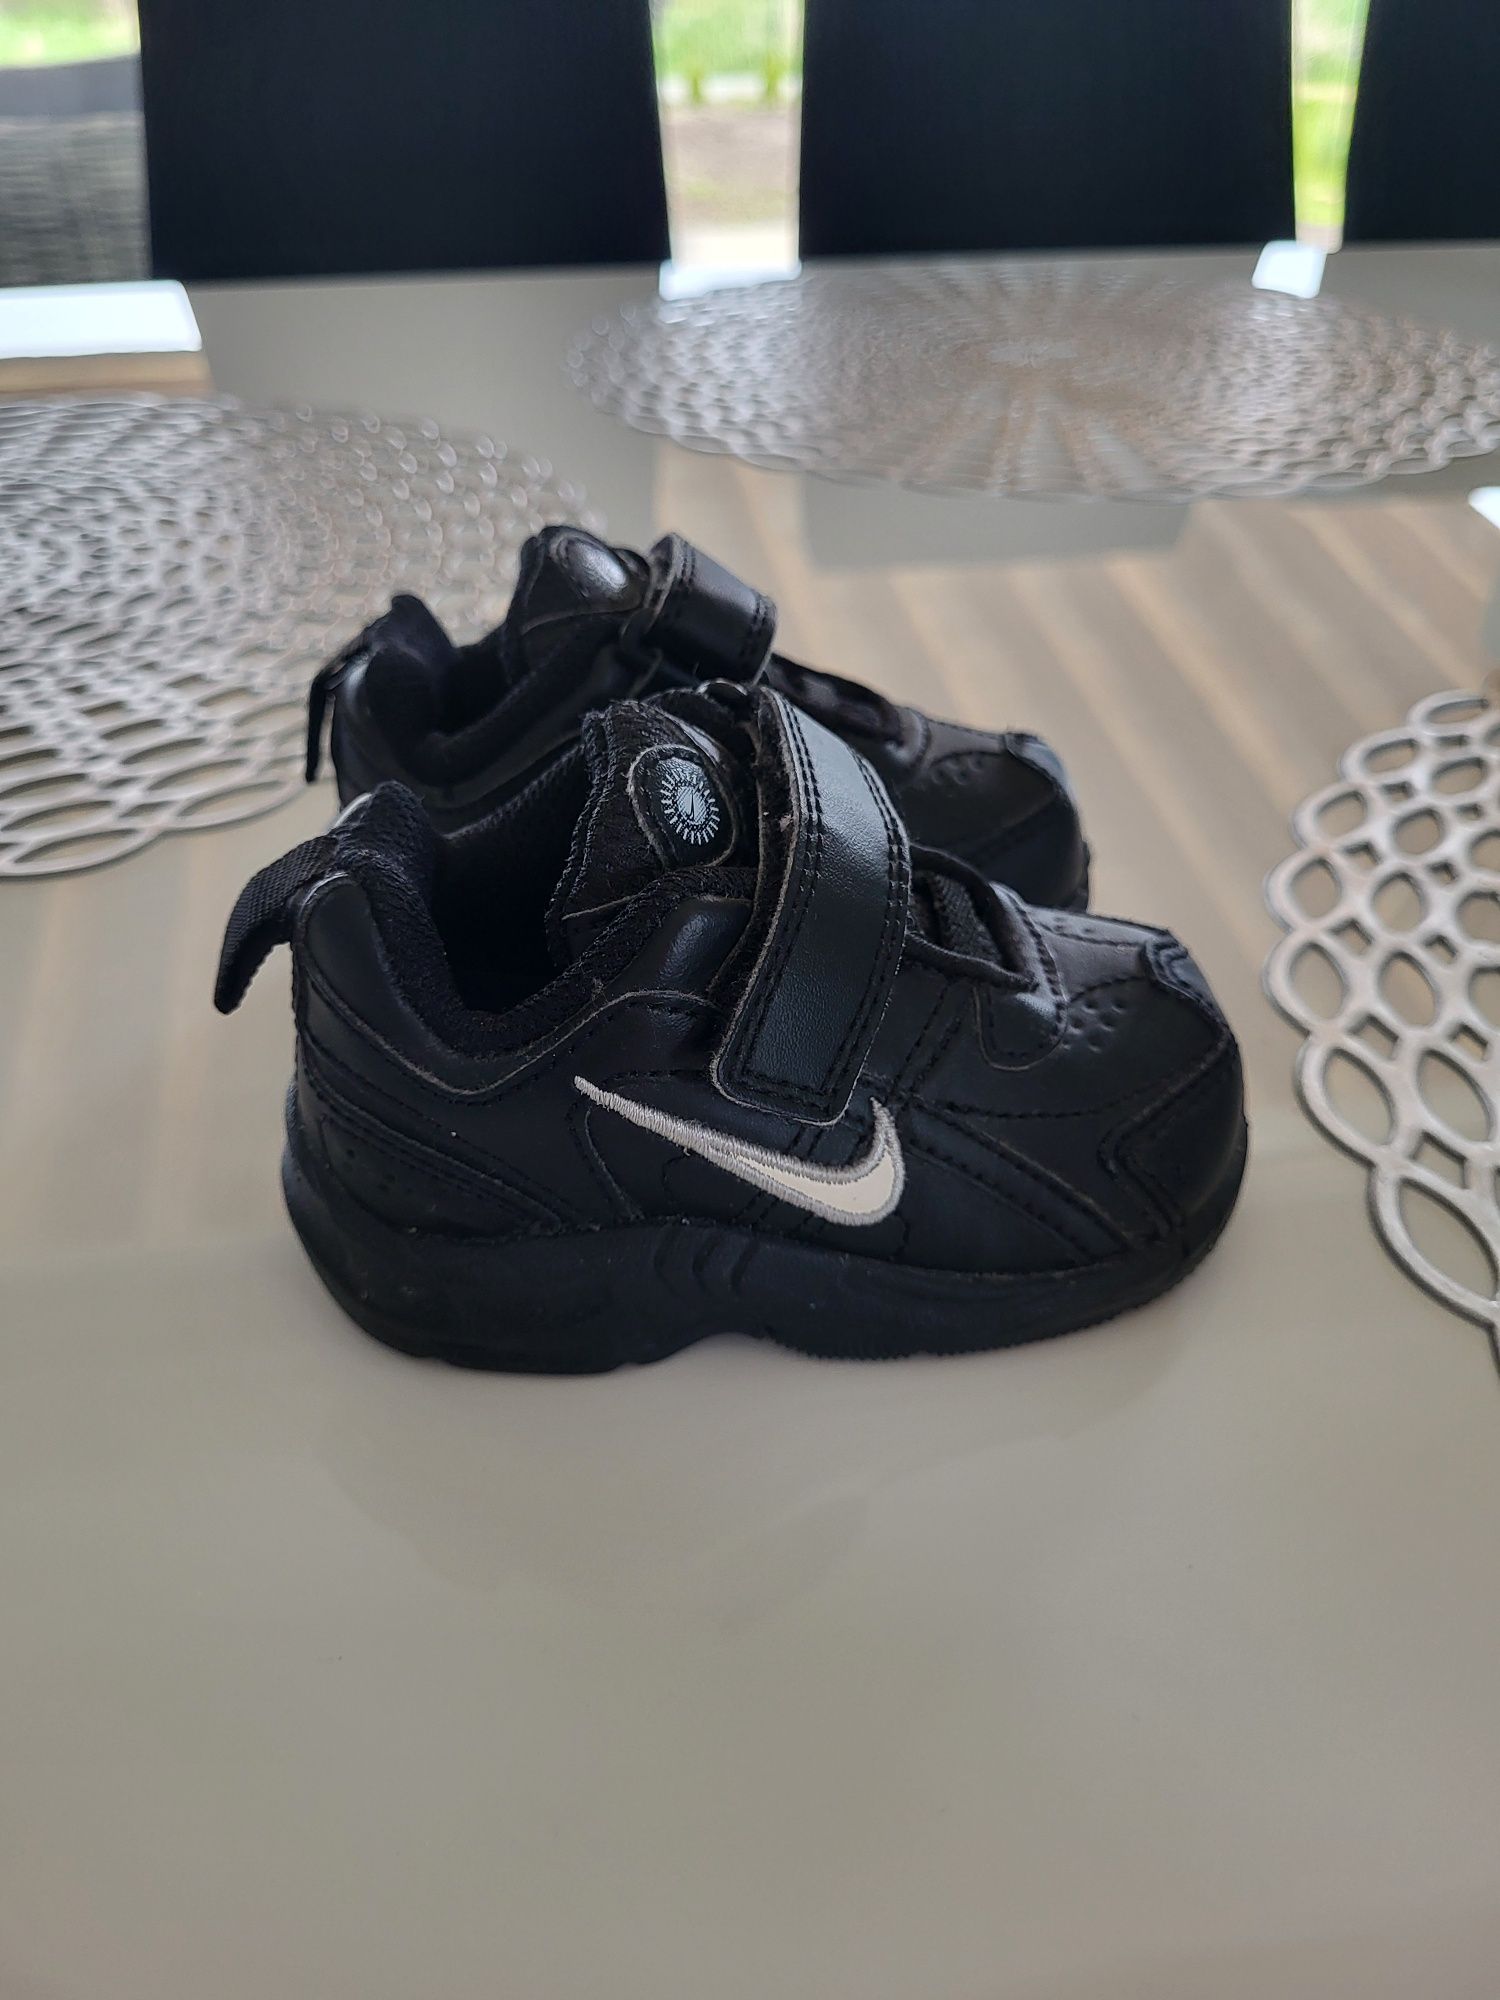 Buty buciki dla chłopca Nike rozm 19